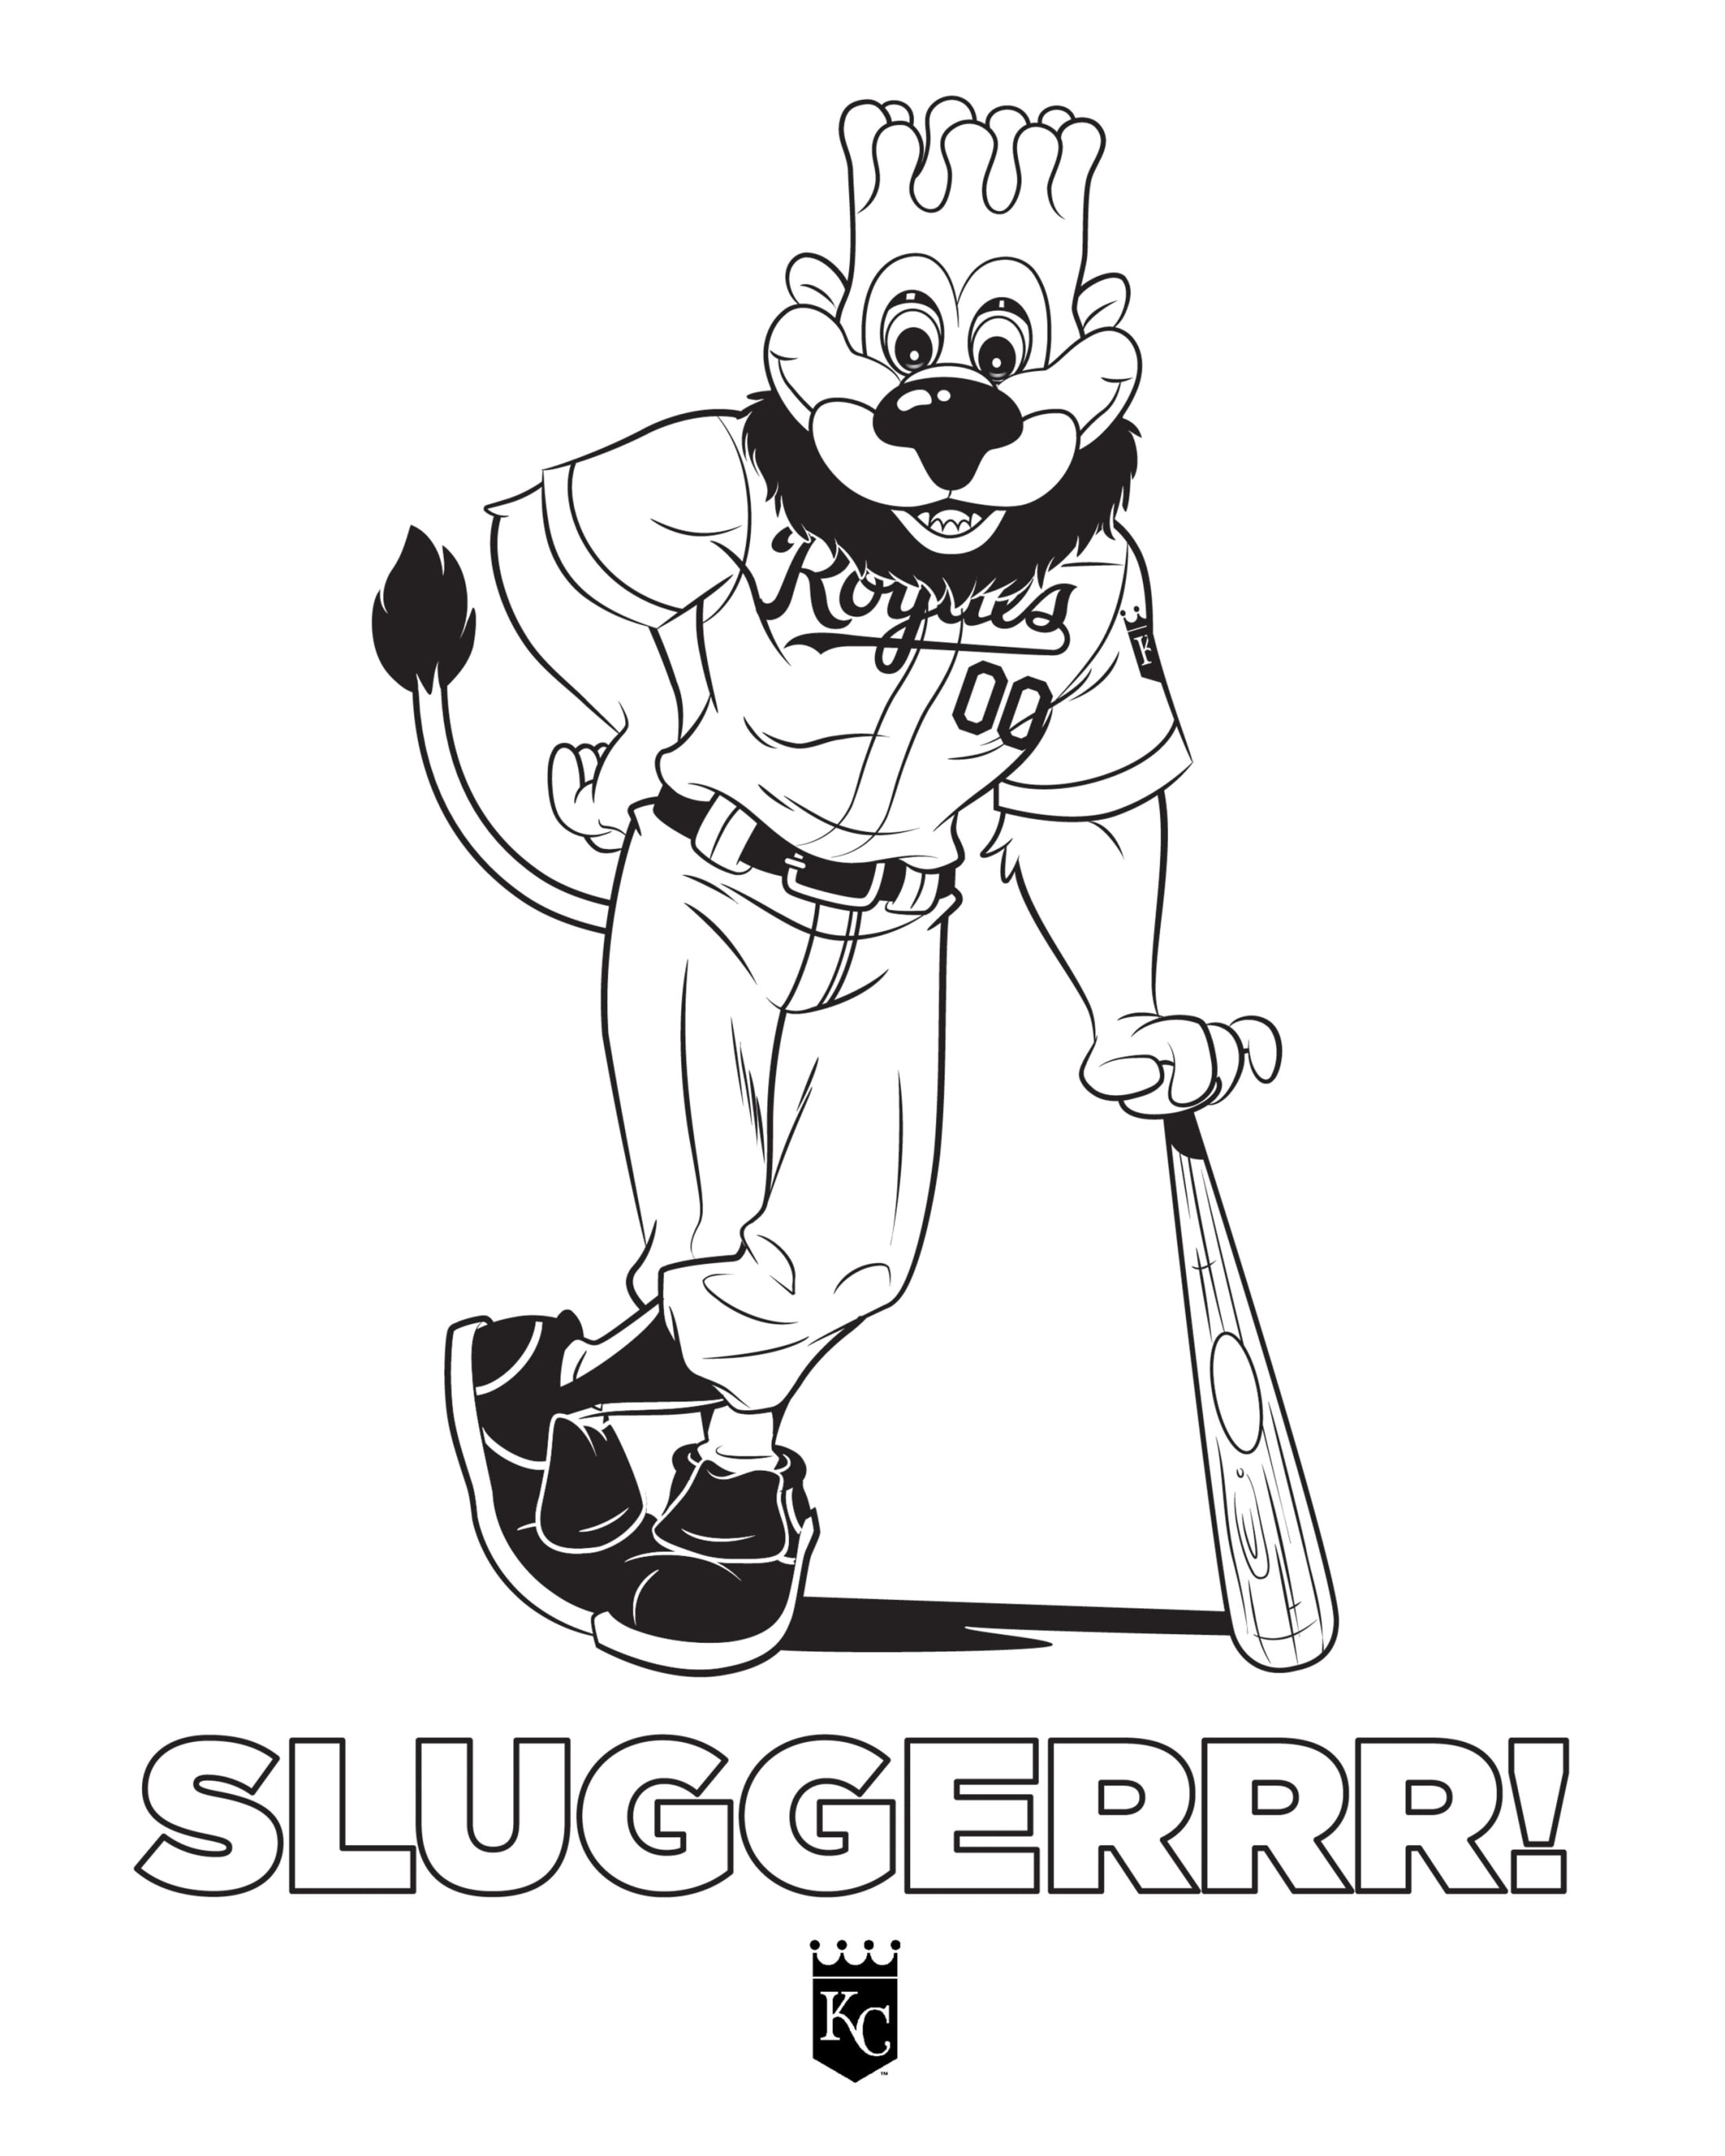 Sluggerrr's Fun and Games